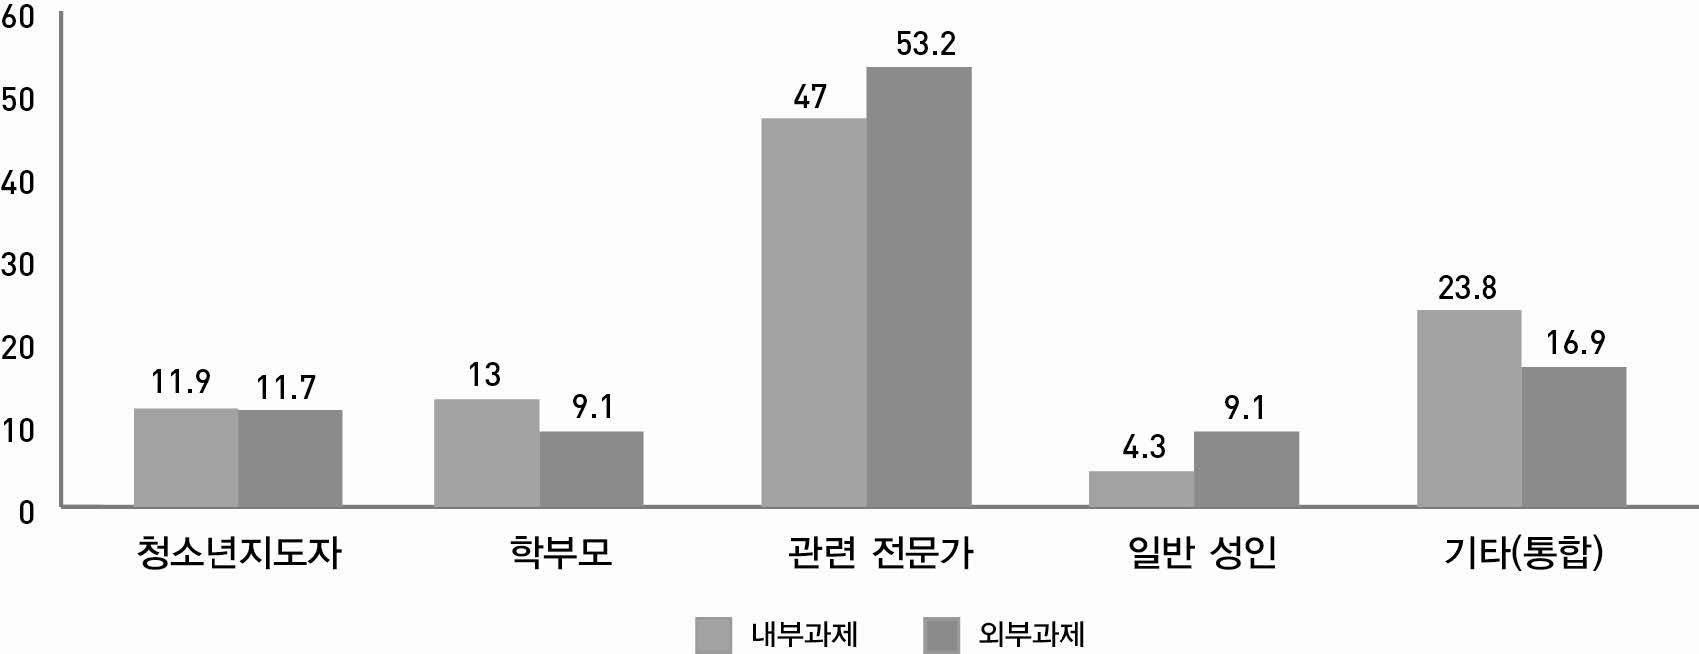 【그림 Ⅲ-21】연구유형별 조사대상 성인 집단 비율